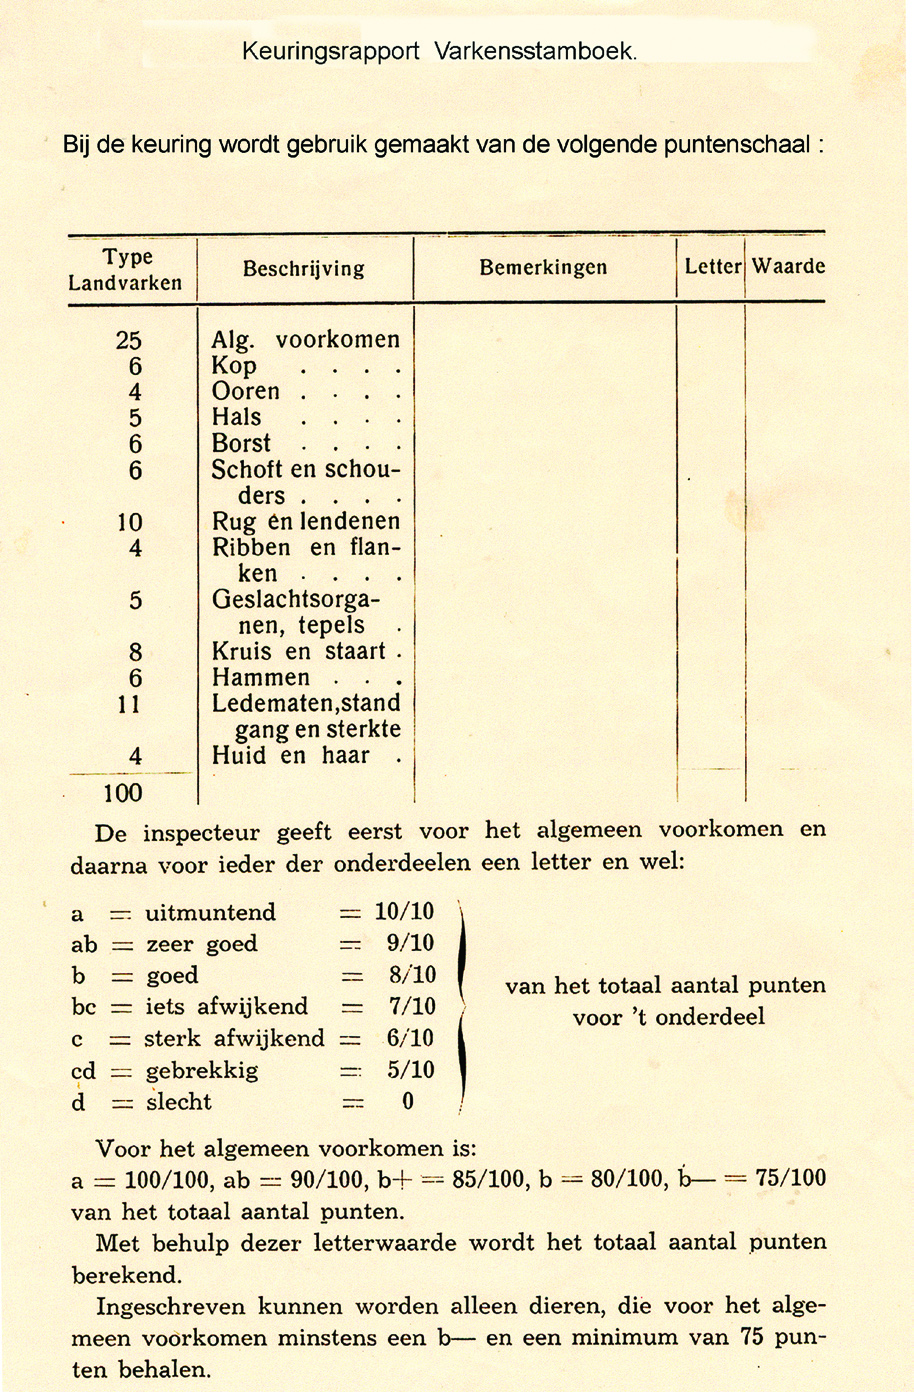 Een voorbeeld van een destijds toegepaste puntenschaal in gebruik bij het Varkensstamboek Overijssel in 1934 is hierna weergegeven: puntenschaal exterieurbeoordeling Dit puntensysteem werd